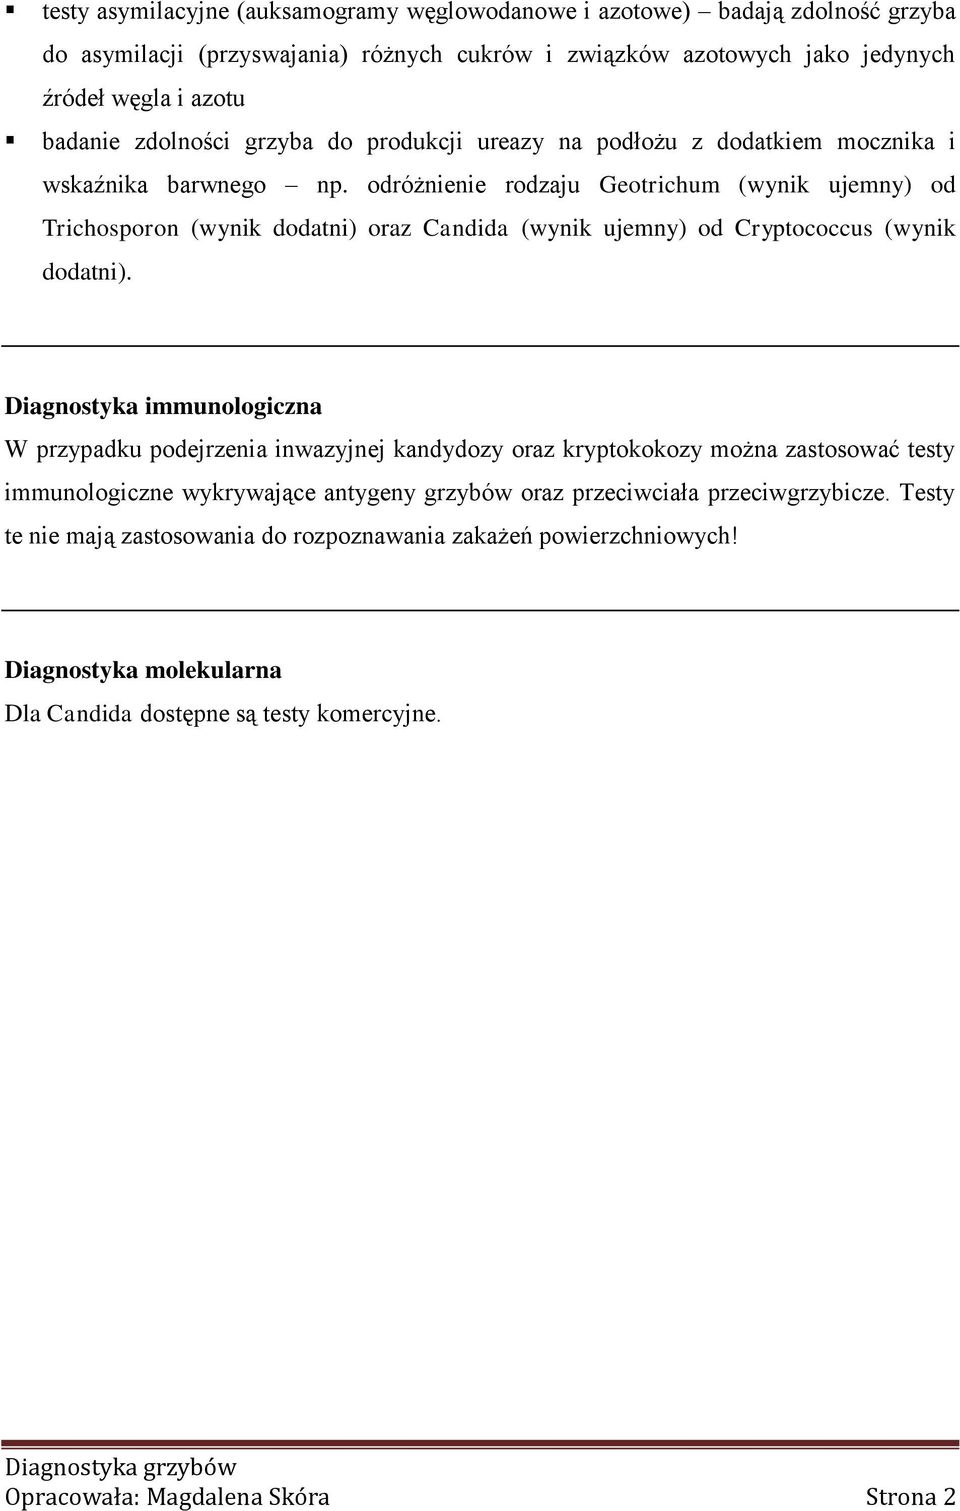 odróżnienie rodzaju Geotrichum (wynik ujemny) od Trichosporon (wynik dodatni) oraz Candida (wynik ujemny) od Cryptococcus (wynik dodatni).